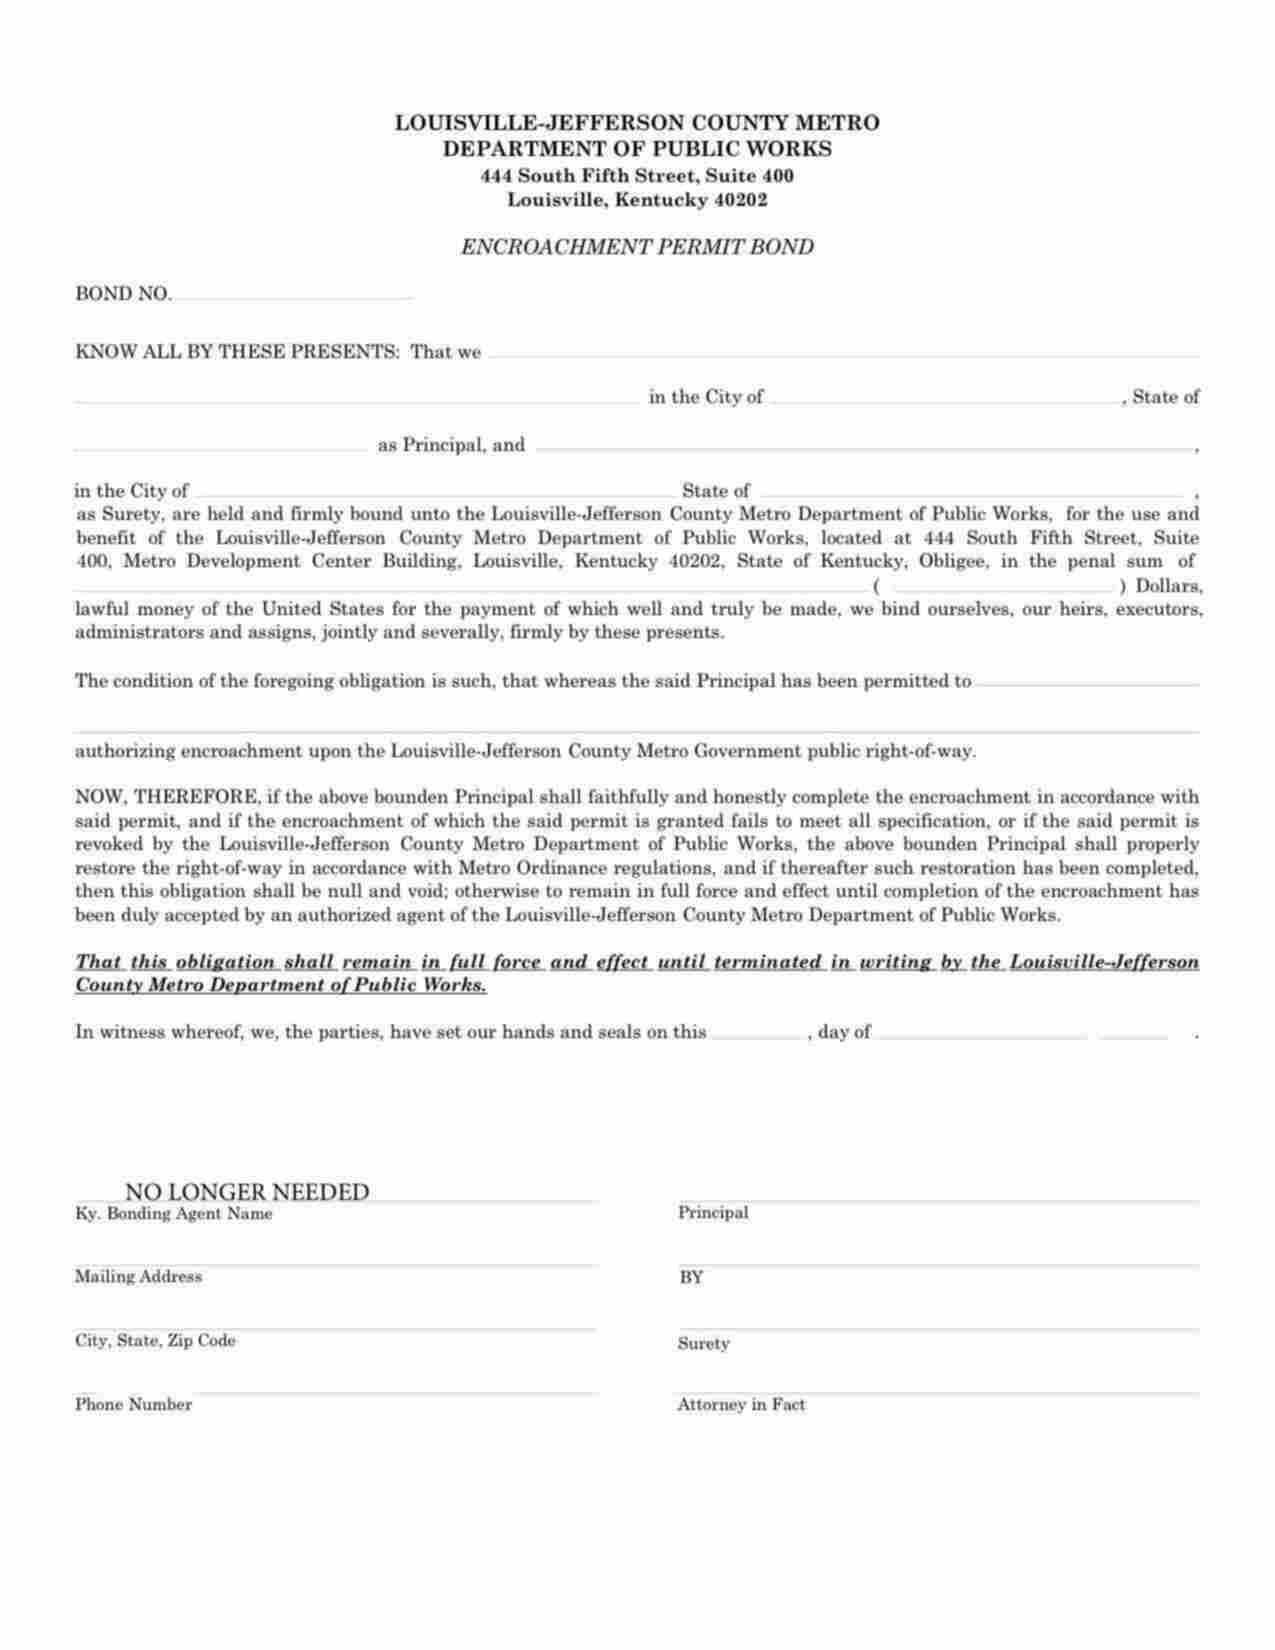 Kentucky Encroachment Permit Bond Form